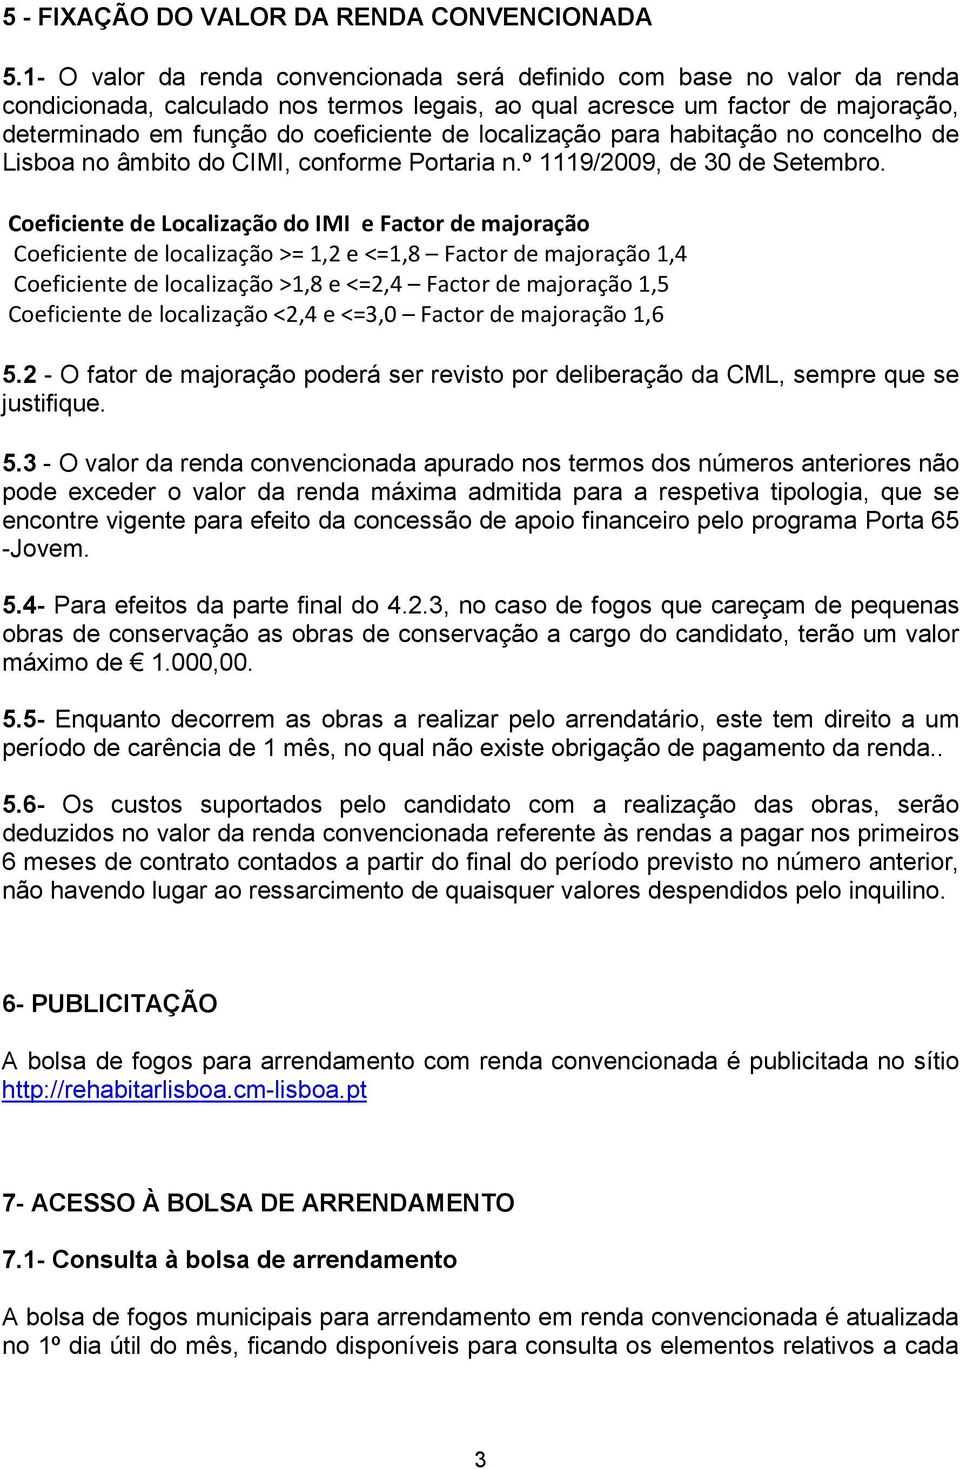 localização para habitação no concelho de Lisboa no âmbito do CIMI, conforme Portaria n.º 1119/2009, de 30 de Setembro.